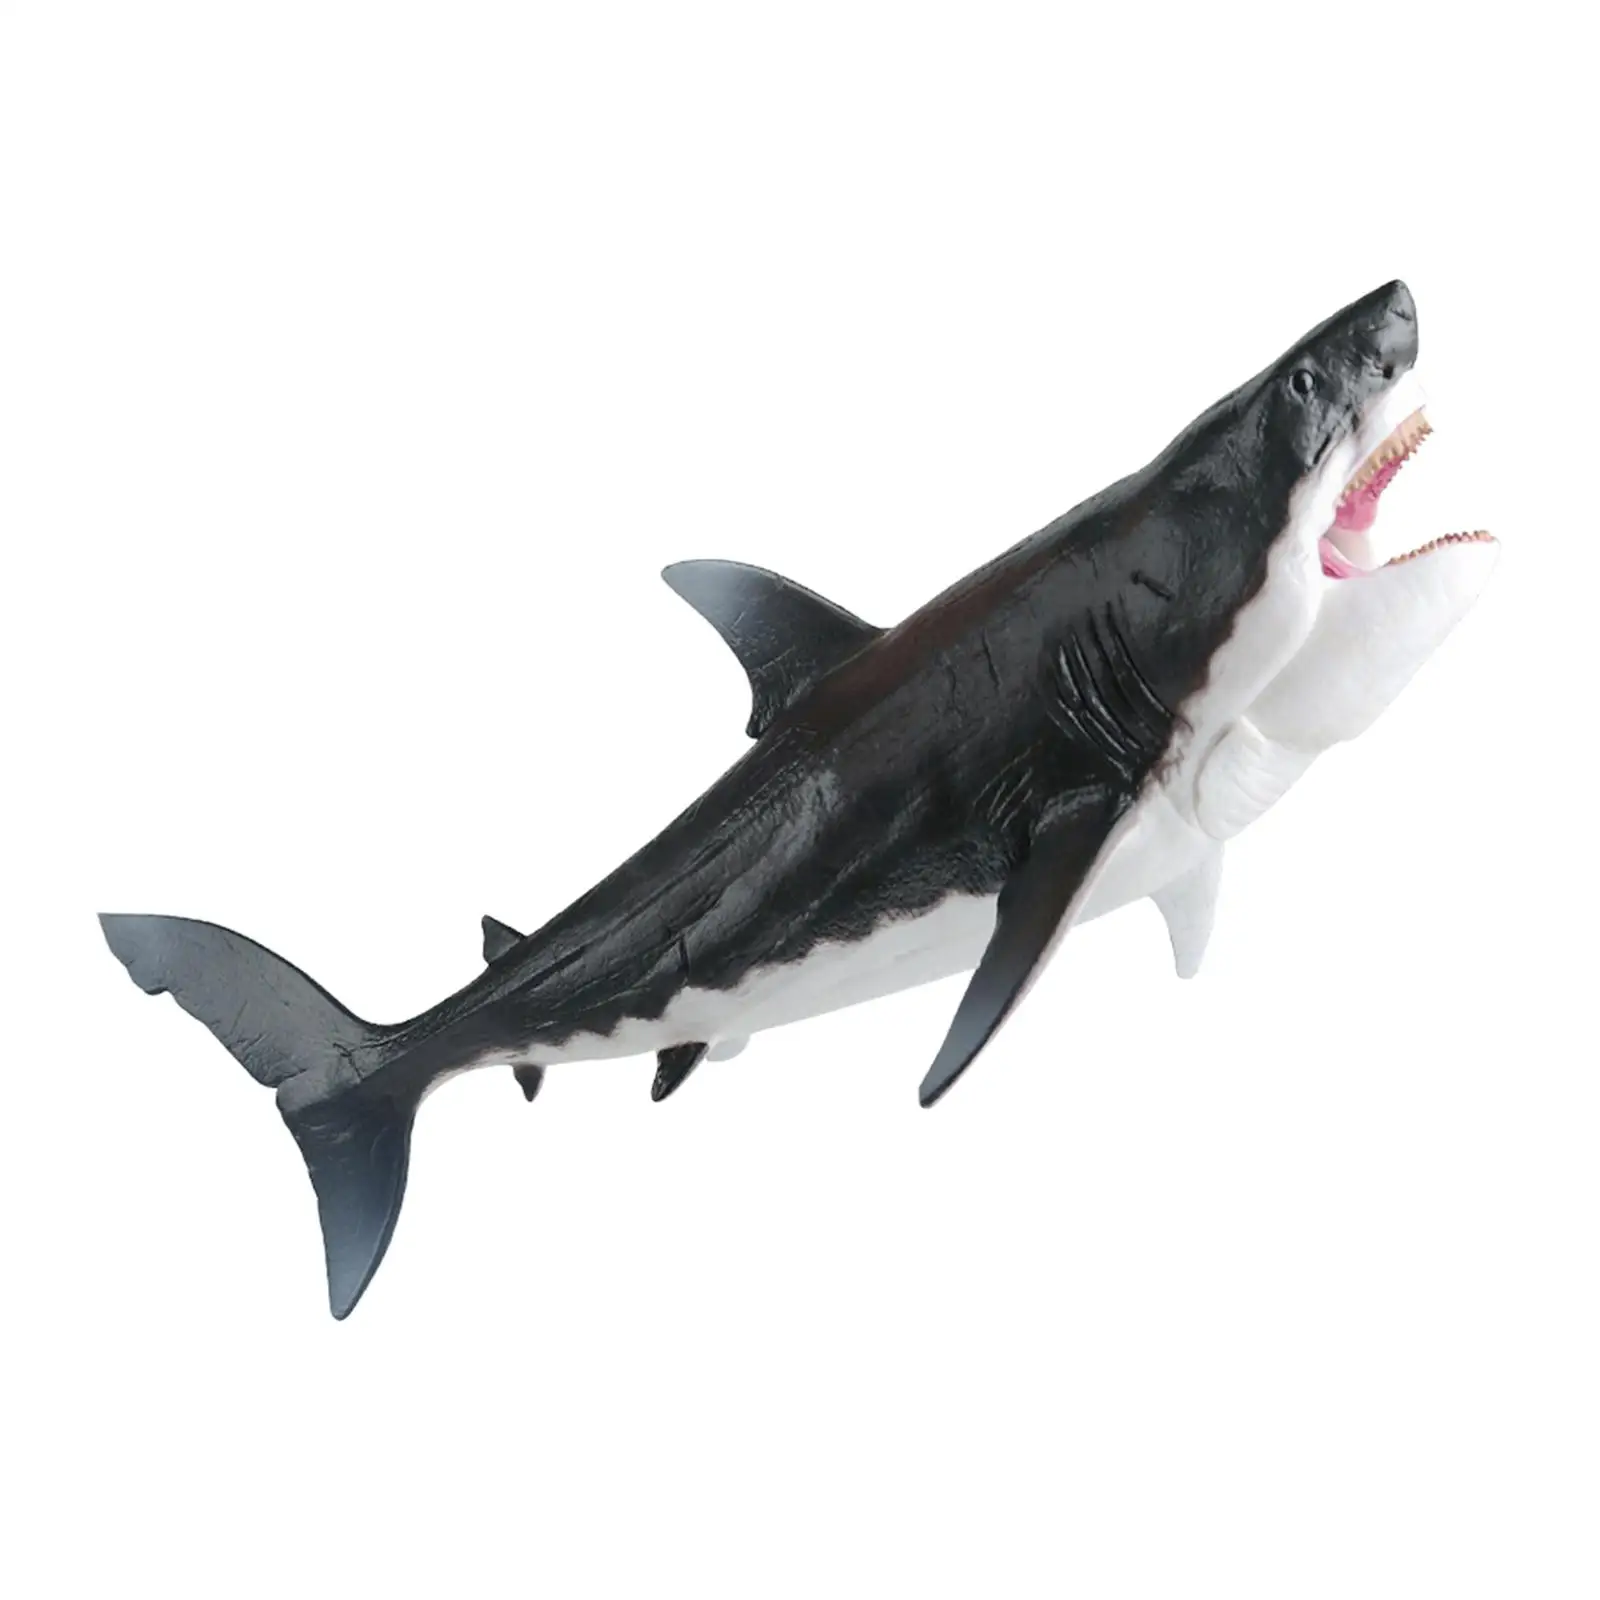 

Большая Акула Рыба обучающая игрушка Доисторический мегалодон экшн-фигурка Морская жизнь Модель Животное для детей мальчиков девочек подарок